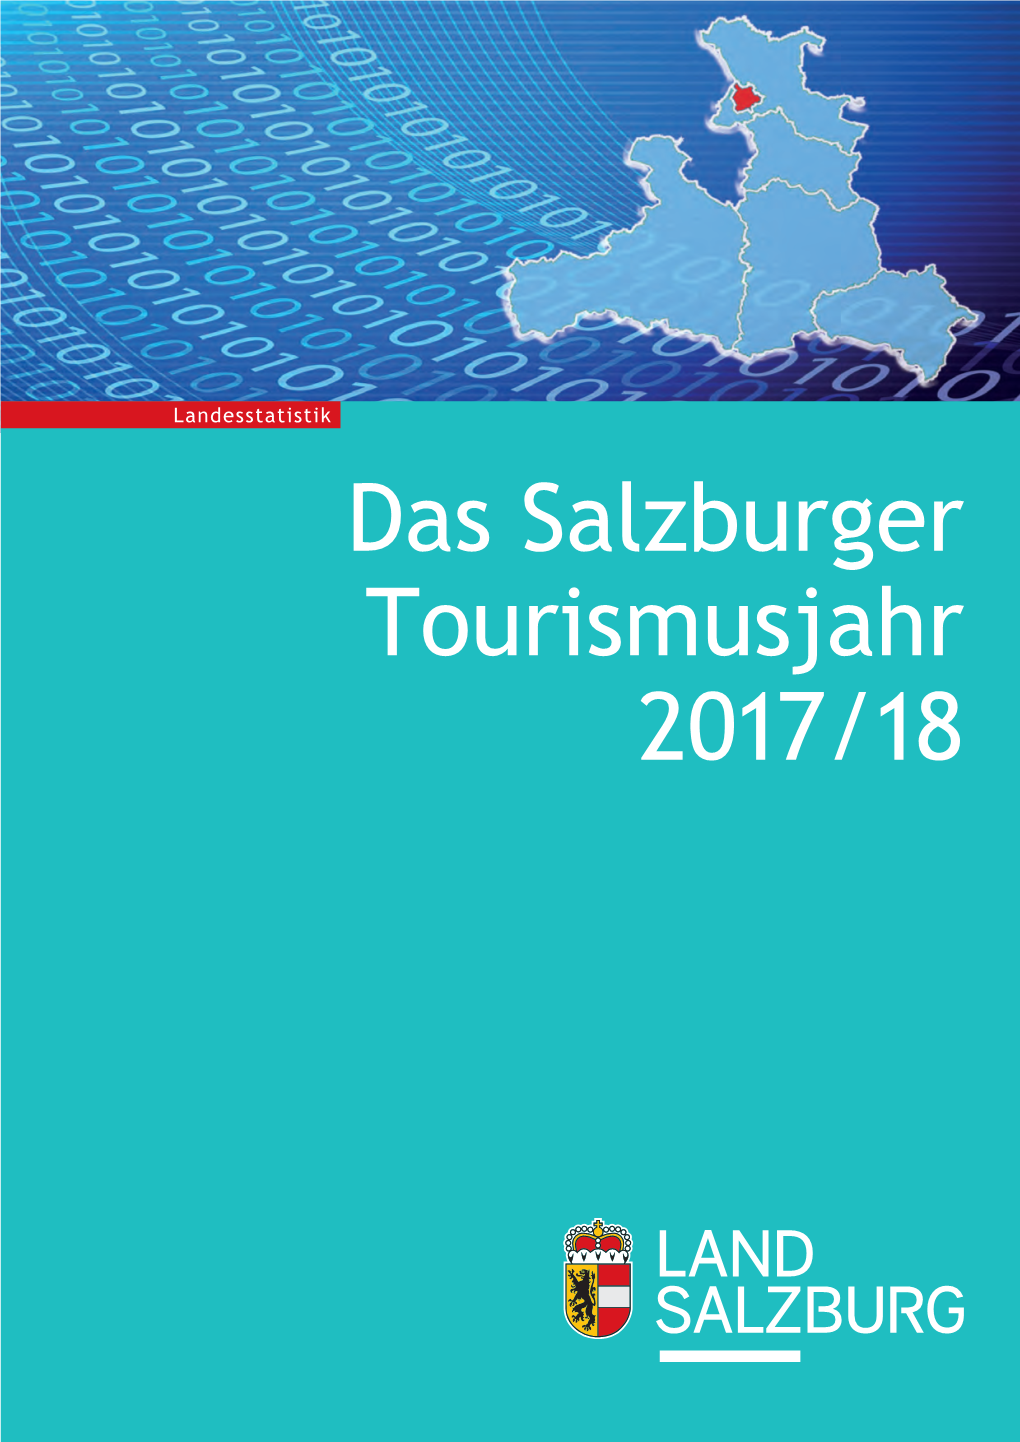 Das Salzburger Tourismusjahr 2017/18